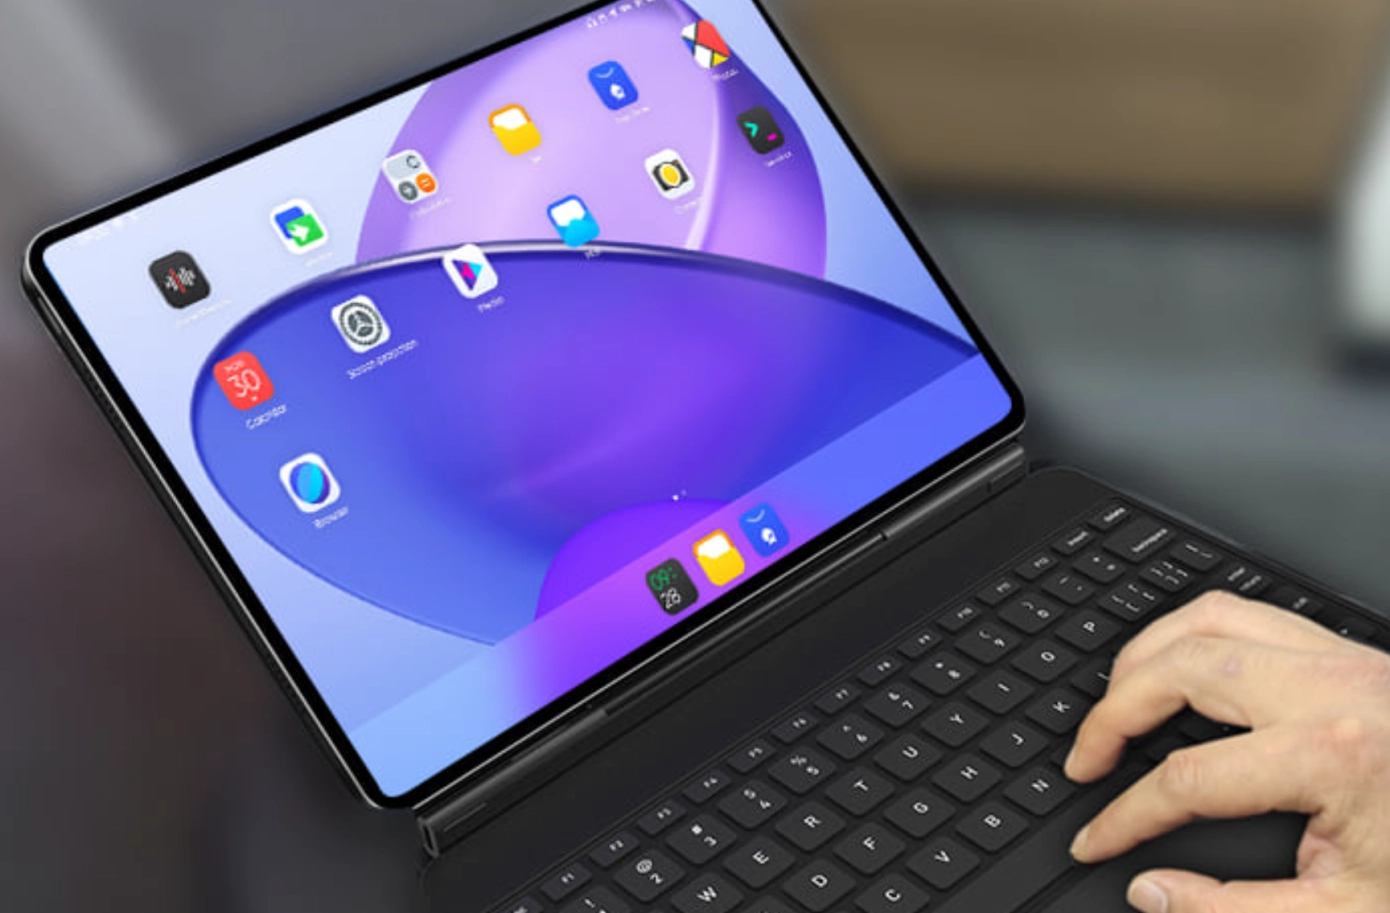 Linux 平板电脑 JingPad A1 开启众筹，可媲美 iPad？